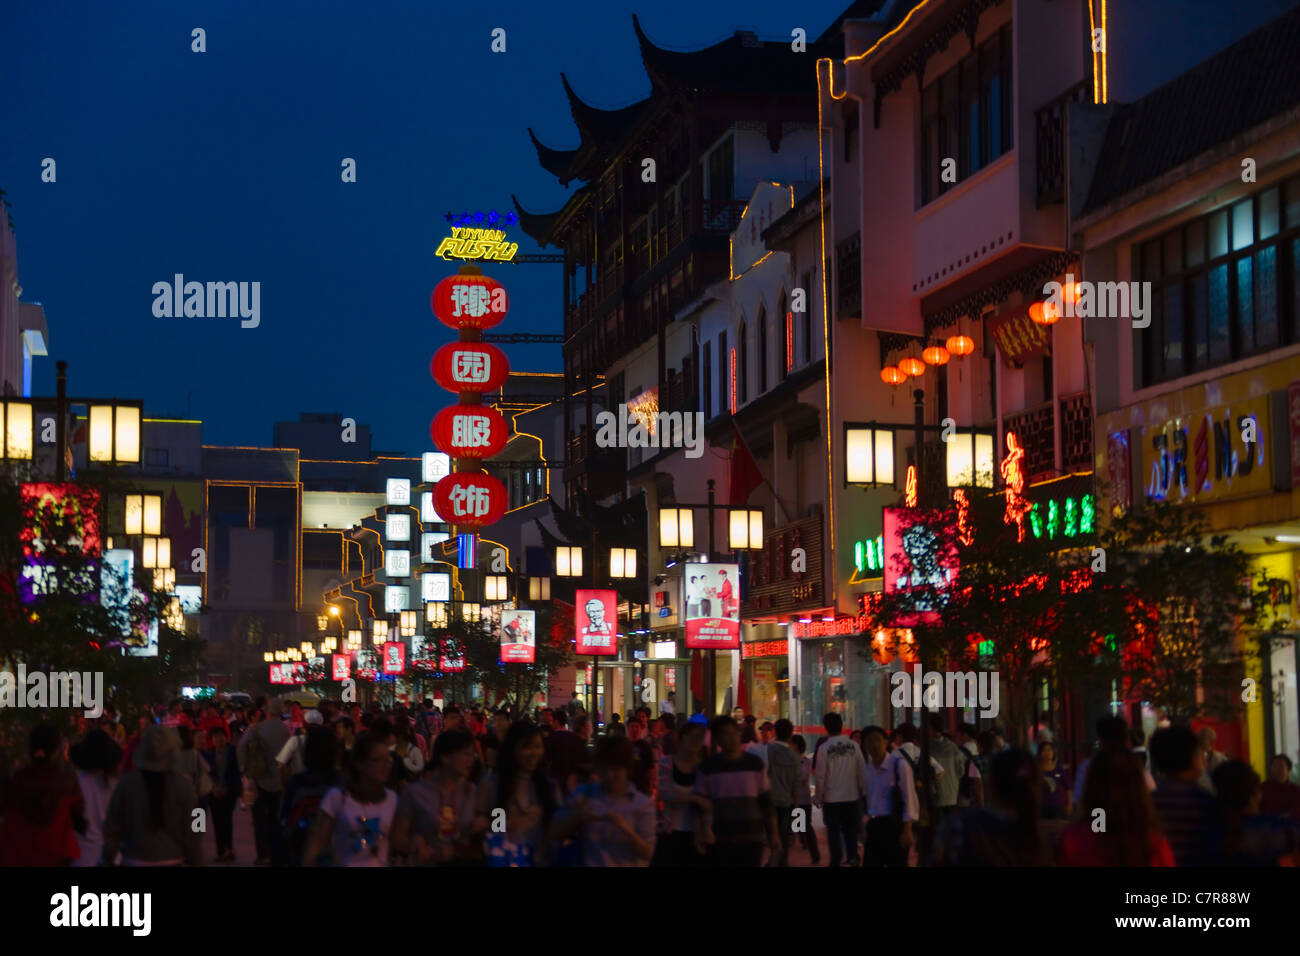 Night view of shops along Guanqian Street, Suzhou, Jiangsu, China Stock Photo